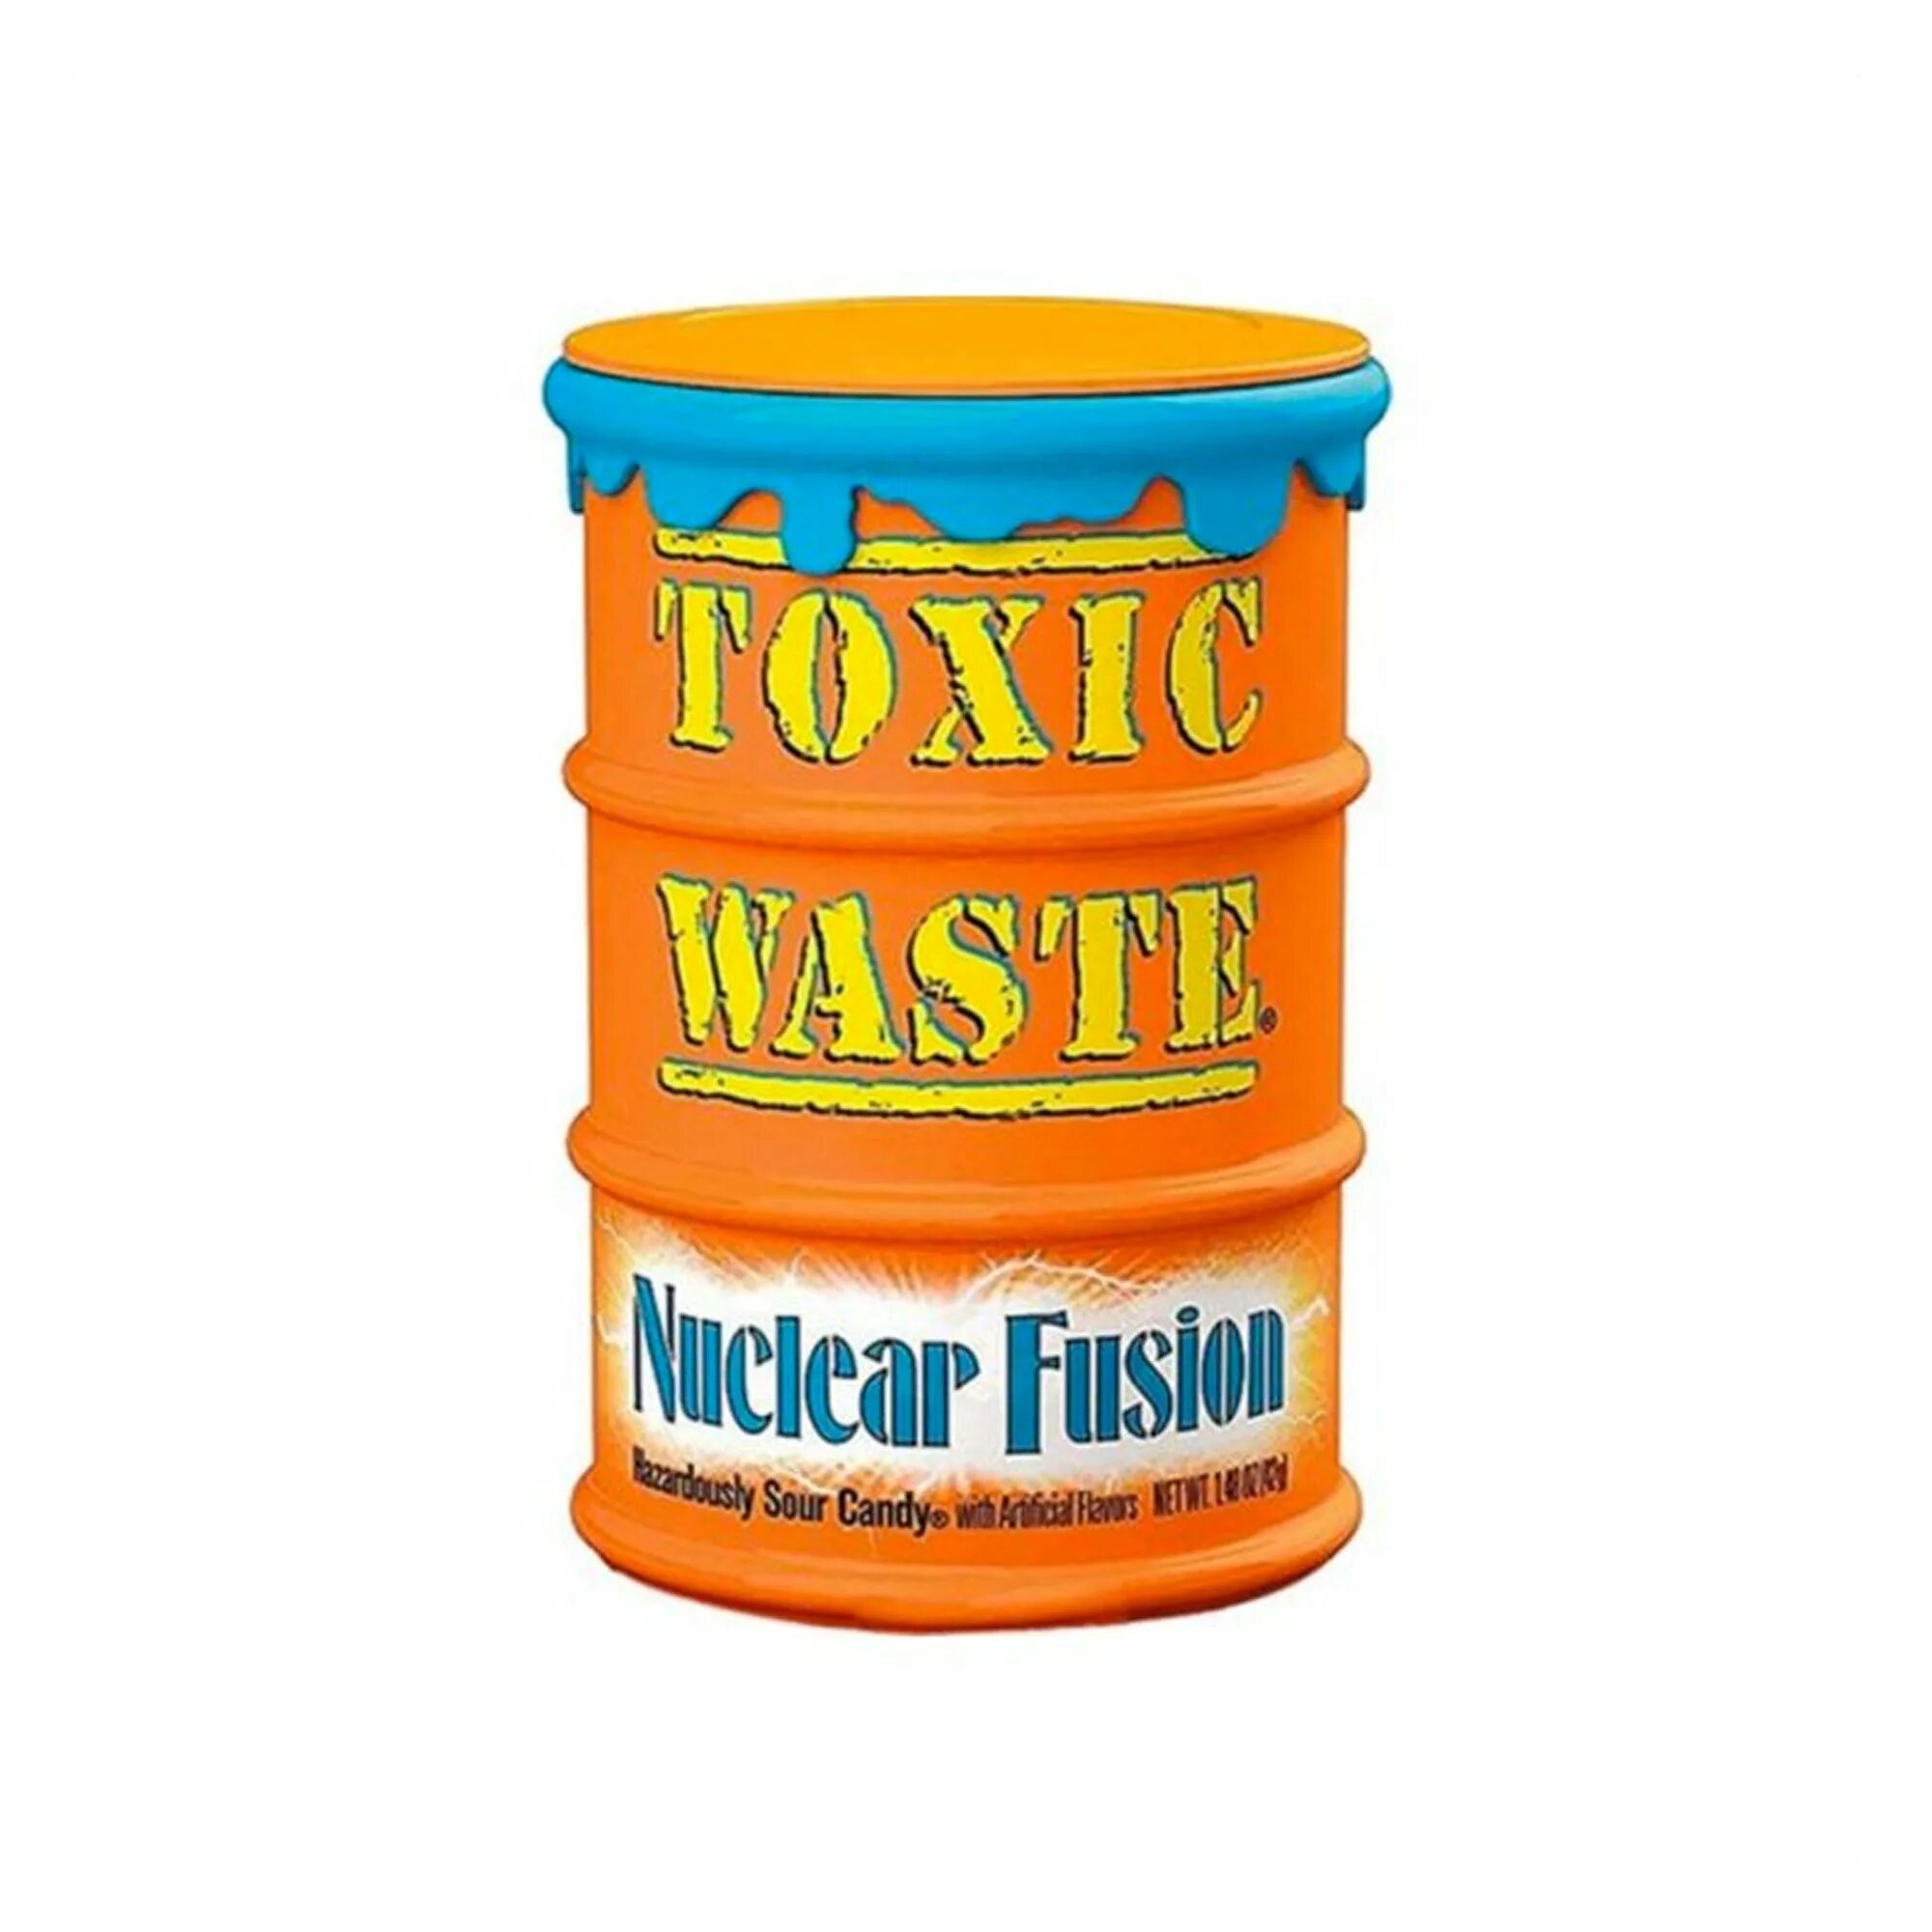 Toxic waste конфеты. Леденцы Toxic waste. Супер кислые конфеты Toxic waste. Конфеты Toxic waste hazardously Sour Candy (желтая банка) 42г 1/12. Токсик вейст